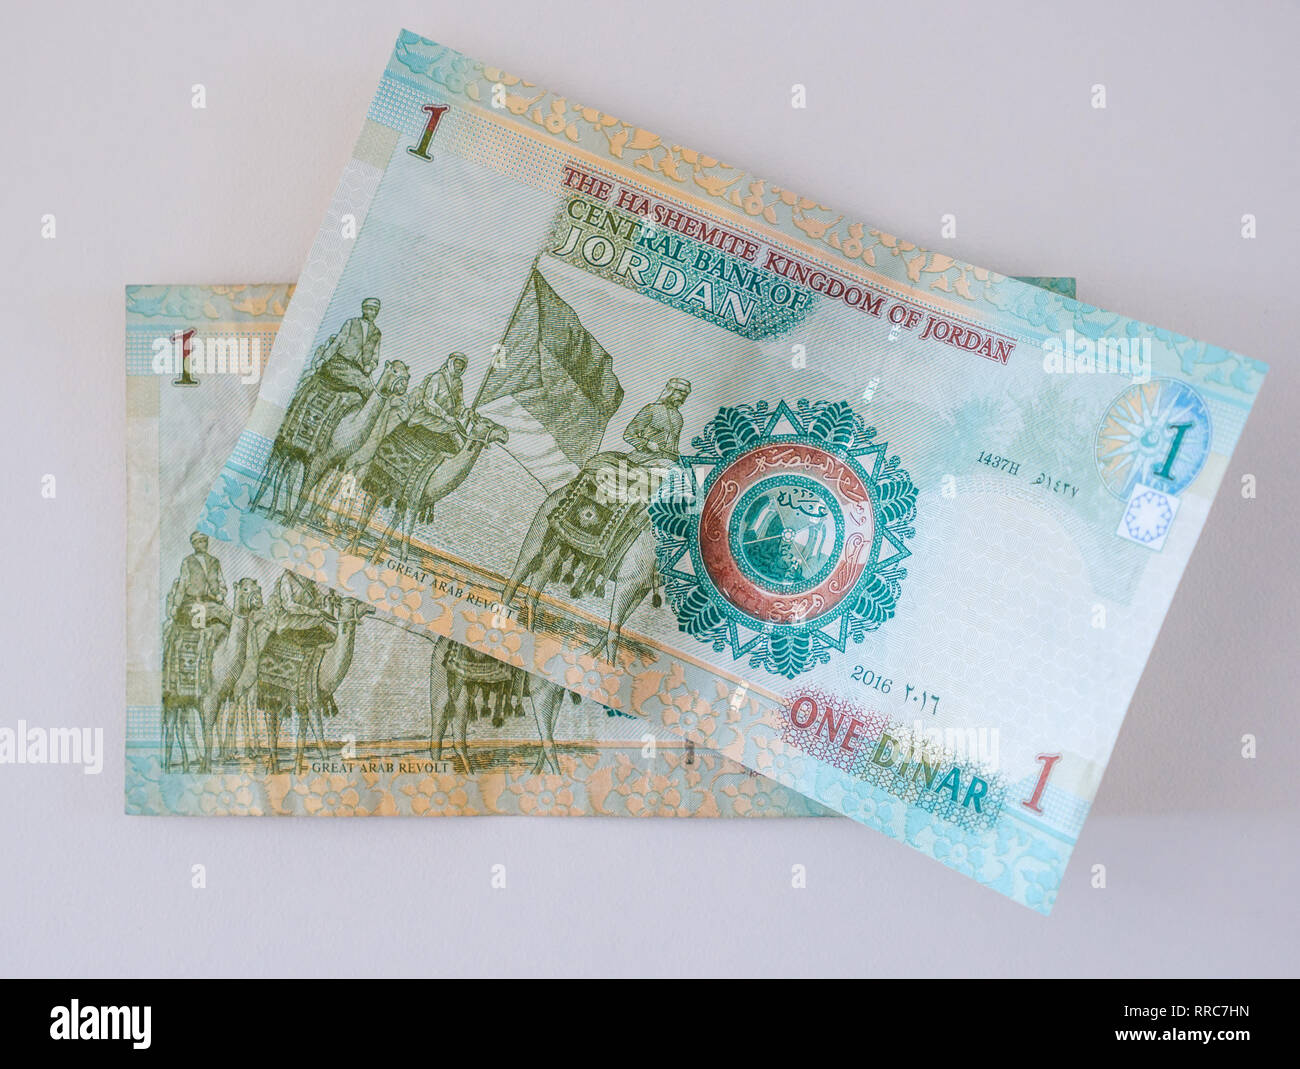 L'argent étranger billets ; Dinar jordanien, 1 dinar note avec une grande révolte arabe (1916), Royaume hachémite de Jordanie Banque D'Images